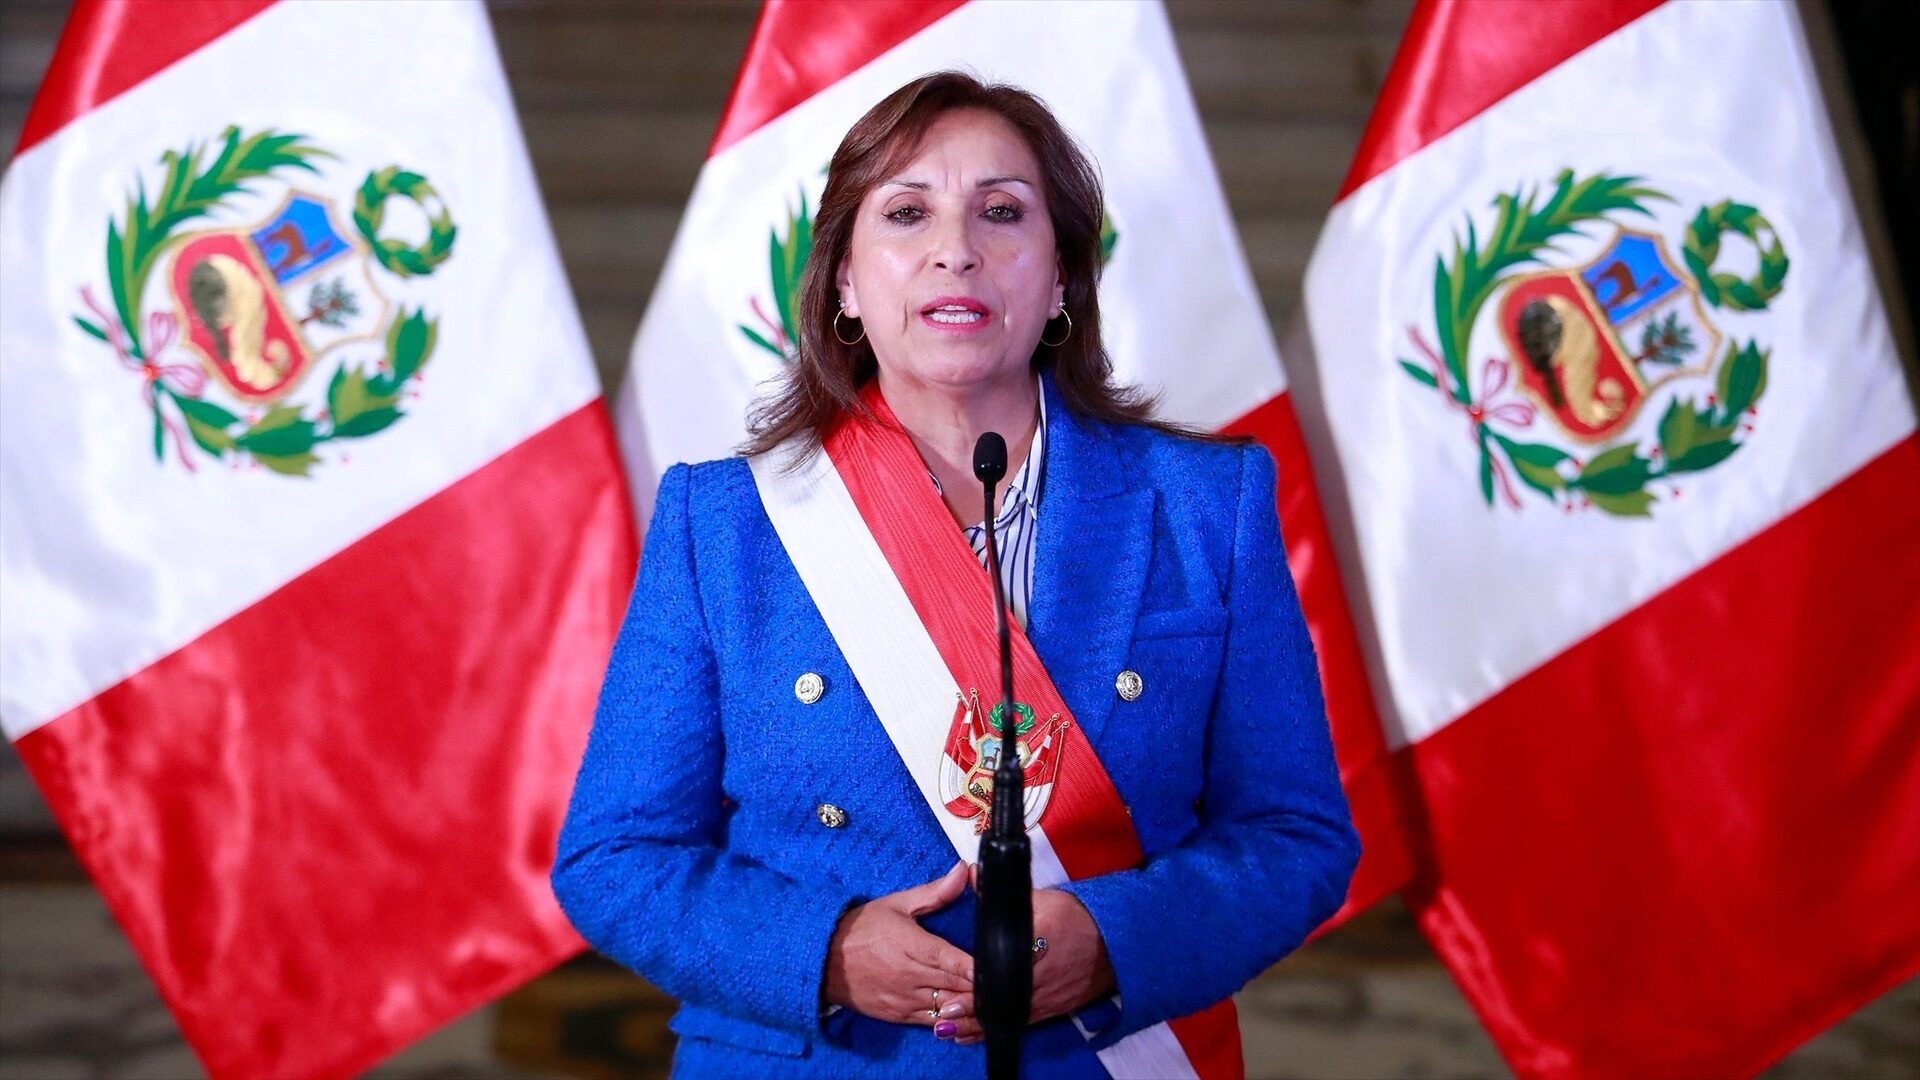 La presidenta de Perú declara estado de emergencia en zonas más afectadas por protestas